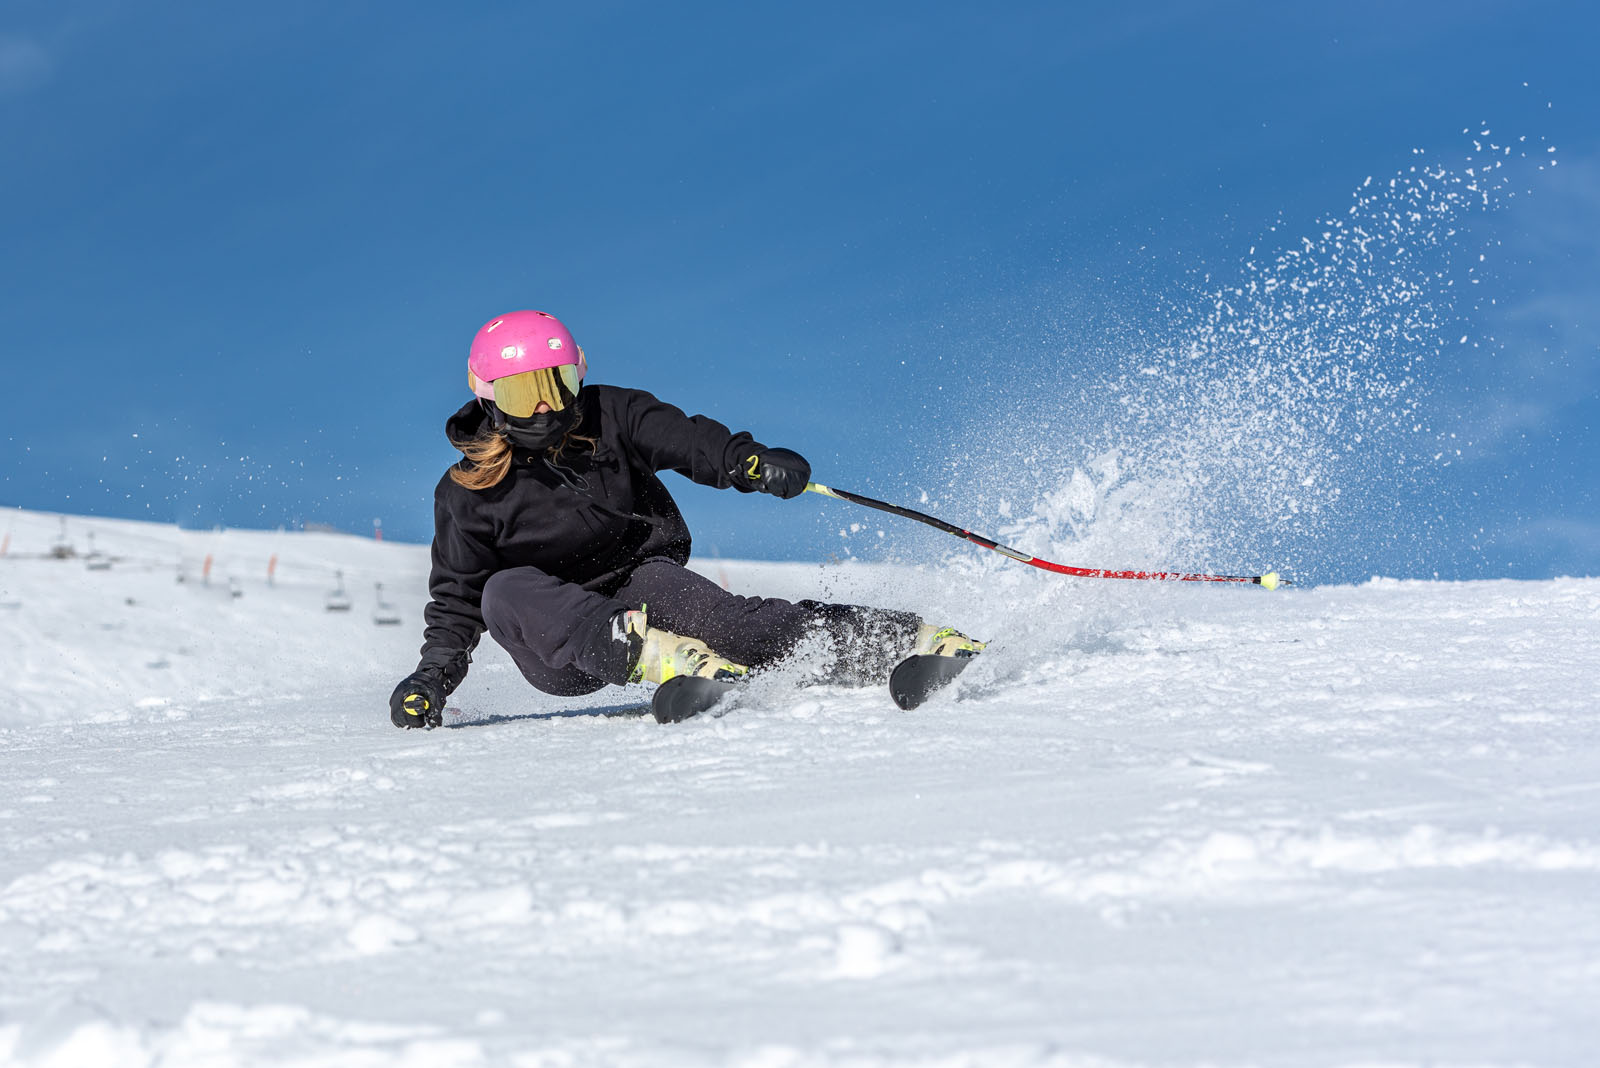 jakie narty wybrać Narty zjazdowe mają wiele zalet, które przyciągają zarówno początkujących, jak i doświadczonych narciarzy. Jednak zanim zaczniesz jeździć na stokach narciarskich, warto zapoznać się z podstawowymi zasadami bezpieczeństwa i podjąć odpowiednie środki ostrożności.